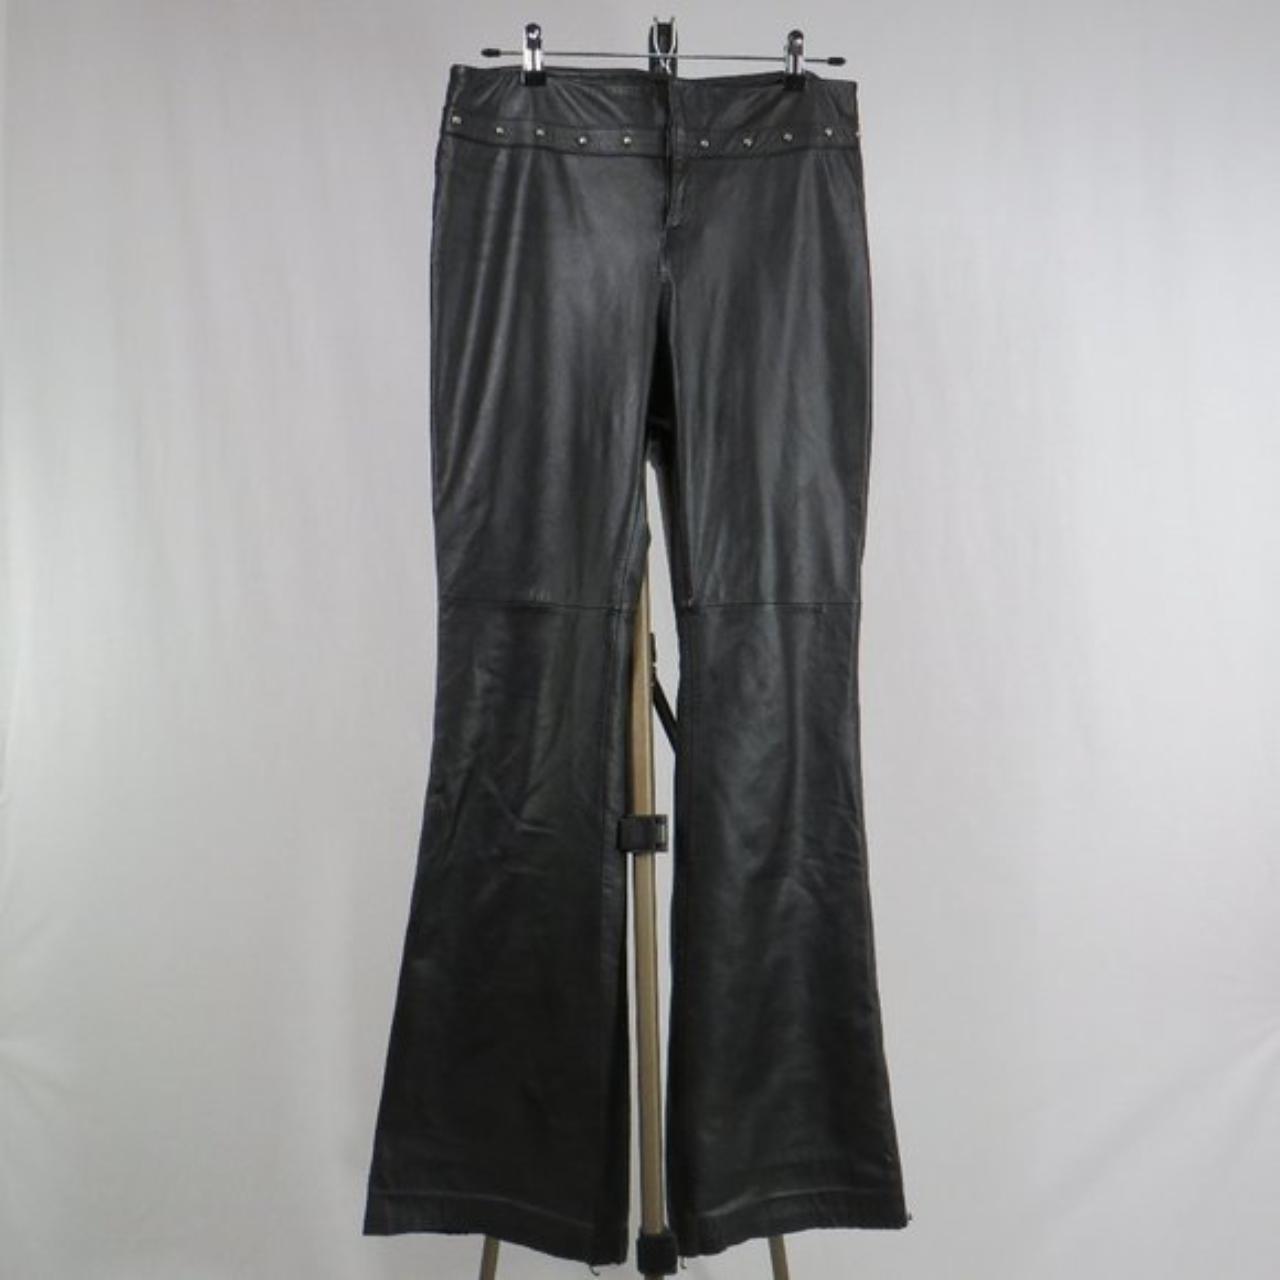 Ralph Lauren black leather mid-rise pants with... - Depop